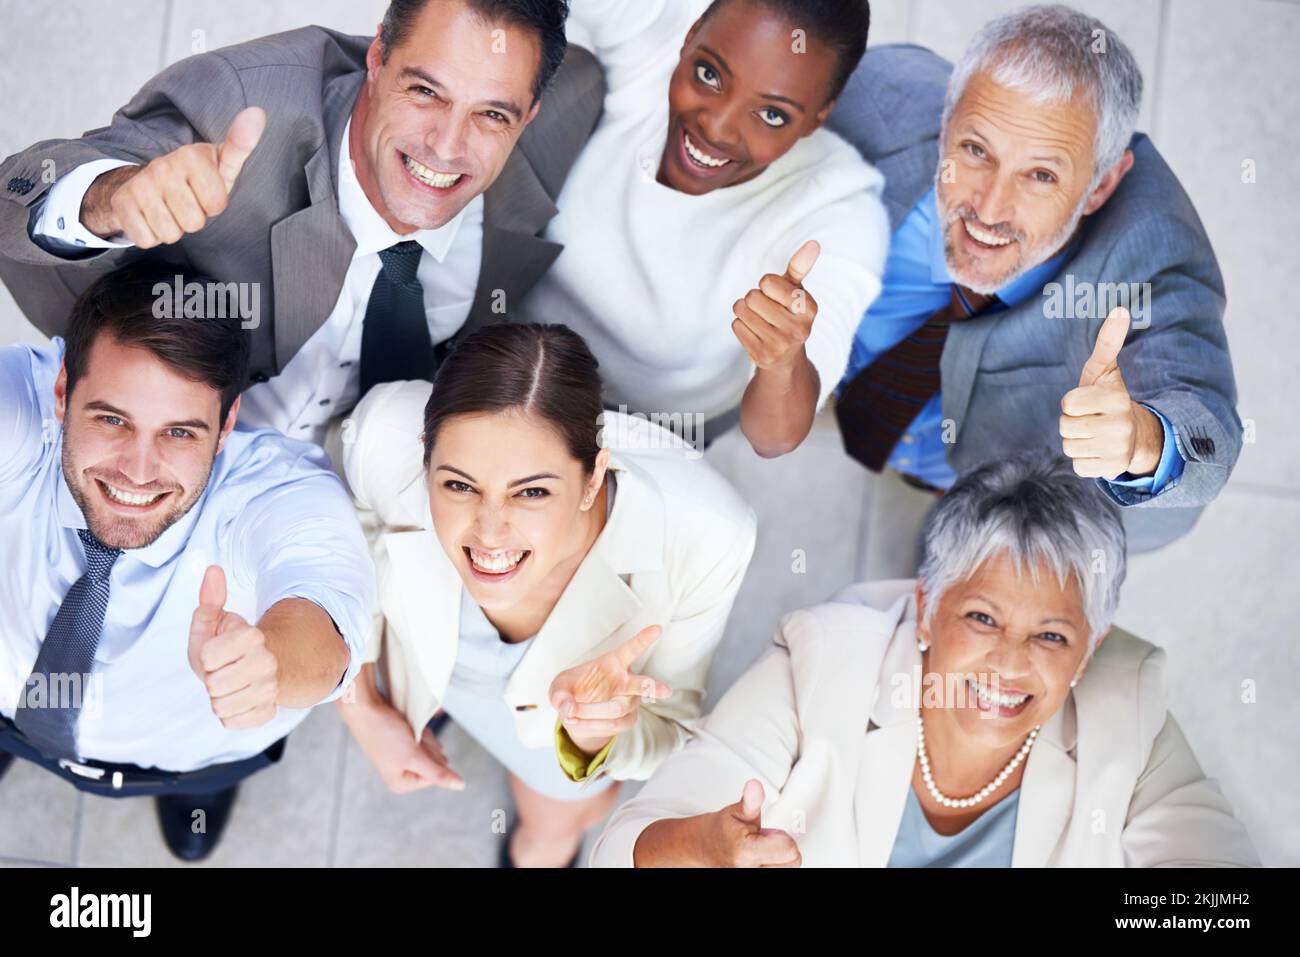 Espíritu de equipo empresarial. Retrato de un grupo de empresarios entusiastas que muestran los pulgares hacia arriba. Foto de stock